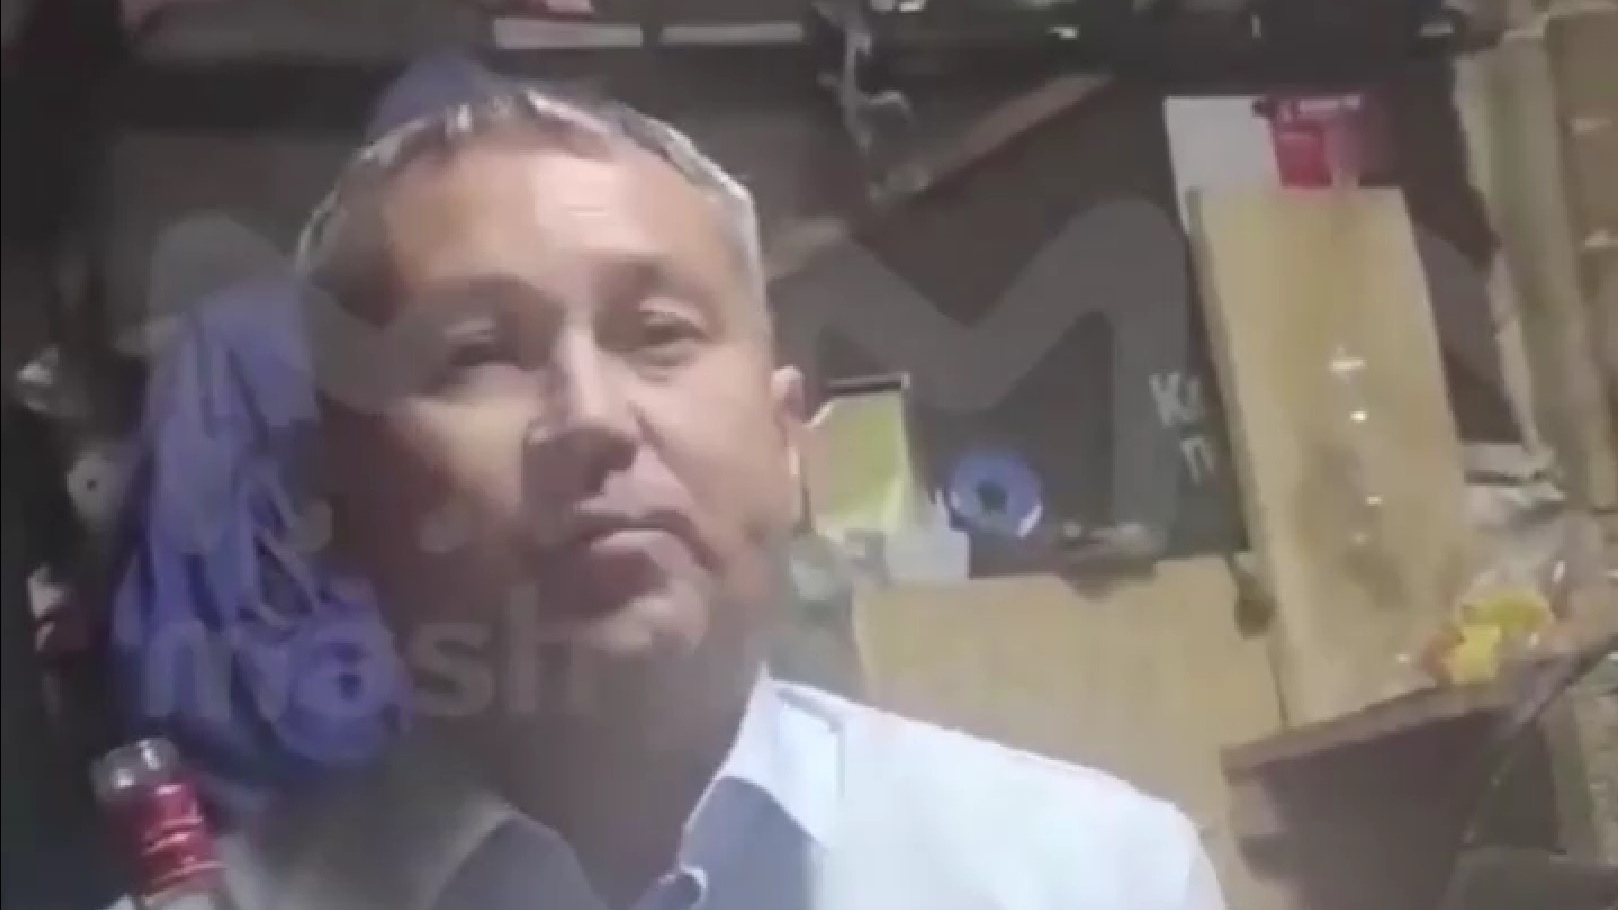 «Буду воровать»: в Сети опубликовали видеокомпромат на кандидата в депутаты из Прикамья. Мы поговорили с ним